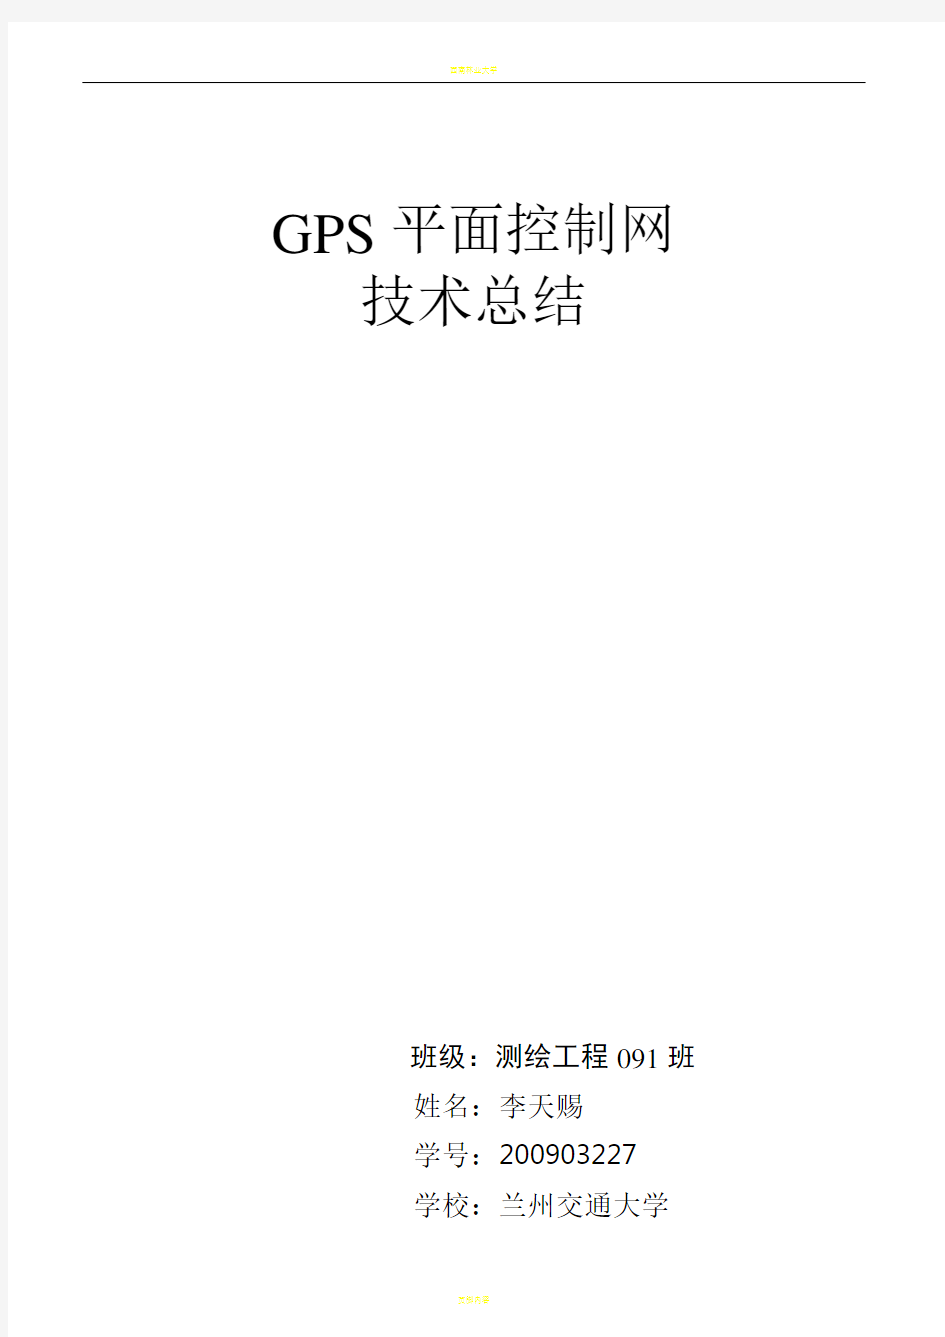 GPS控制网技术总结